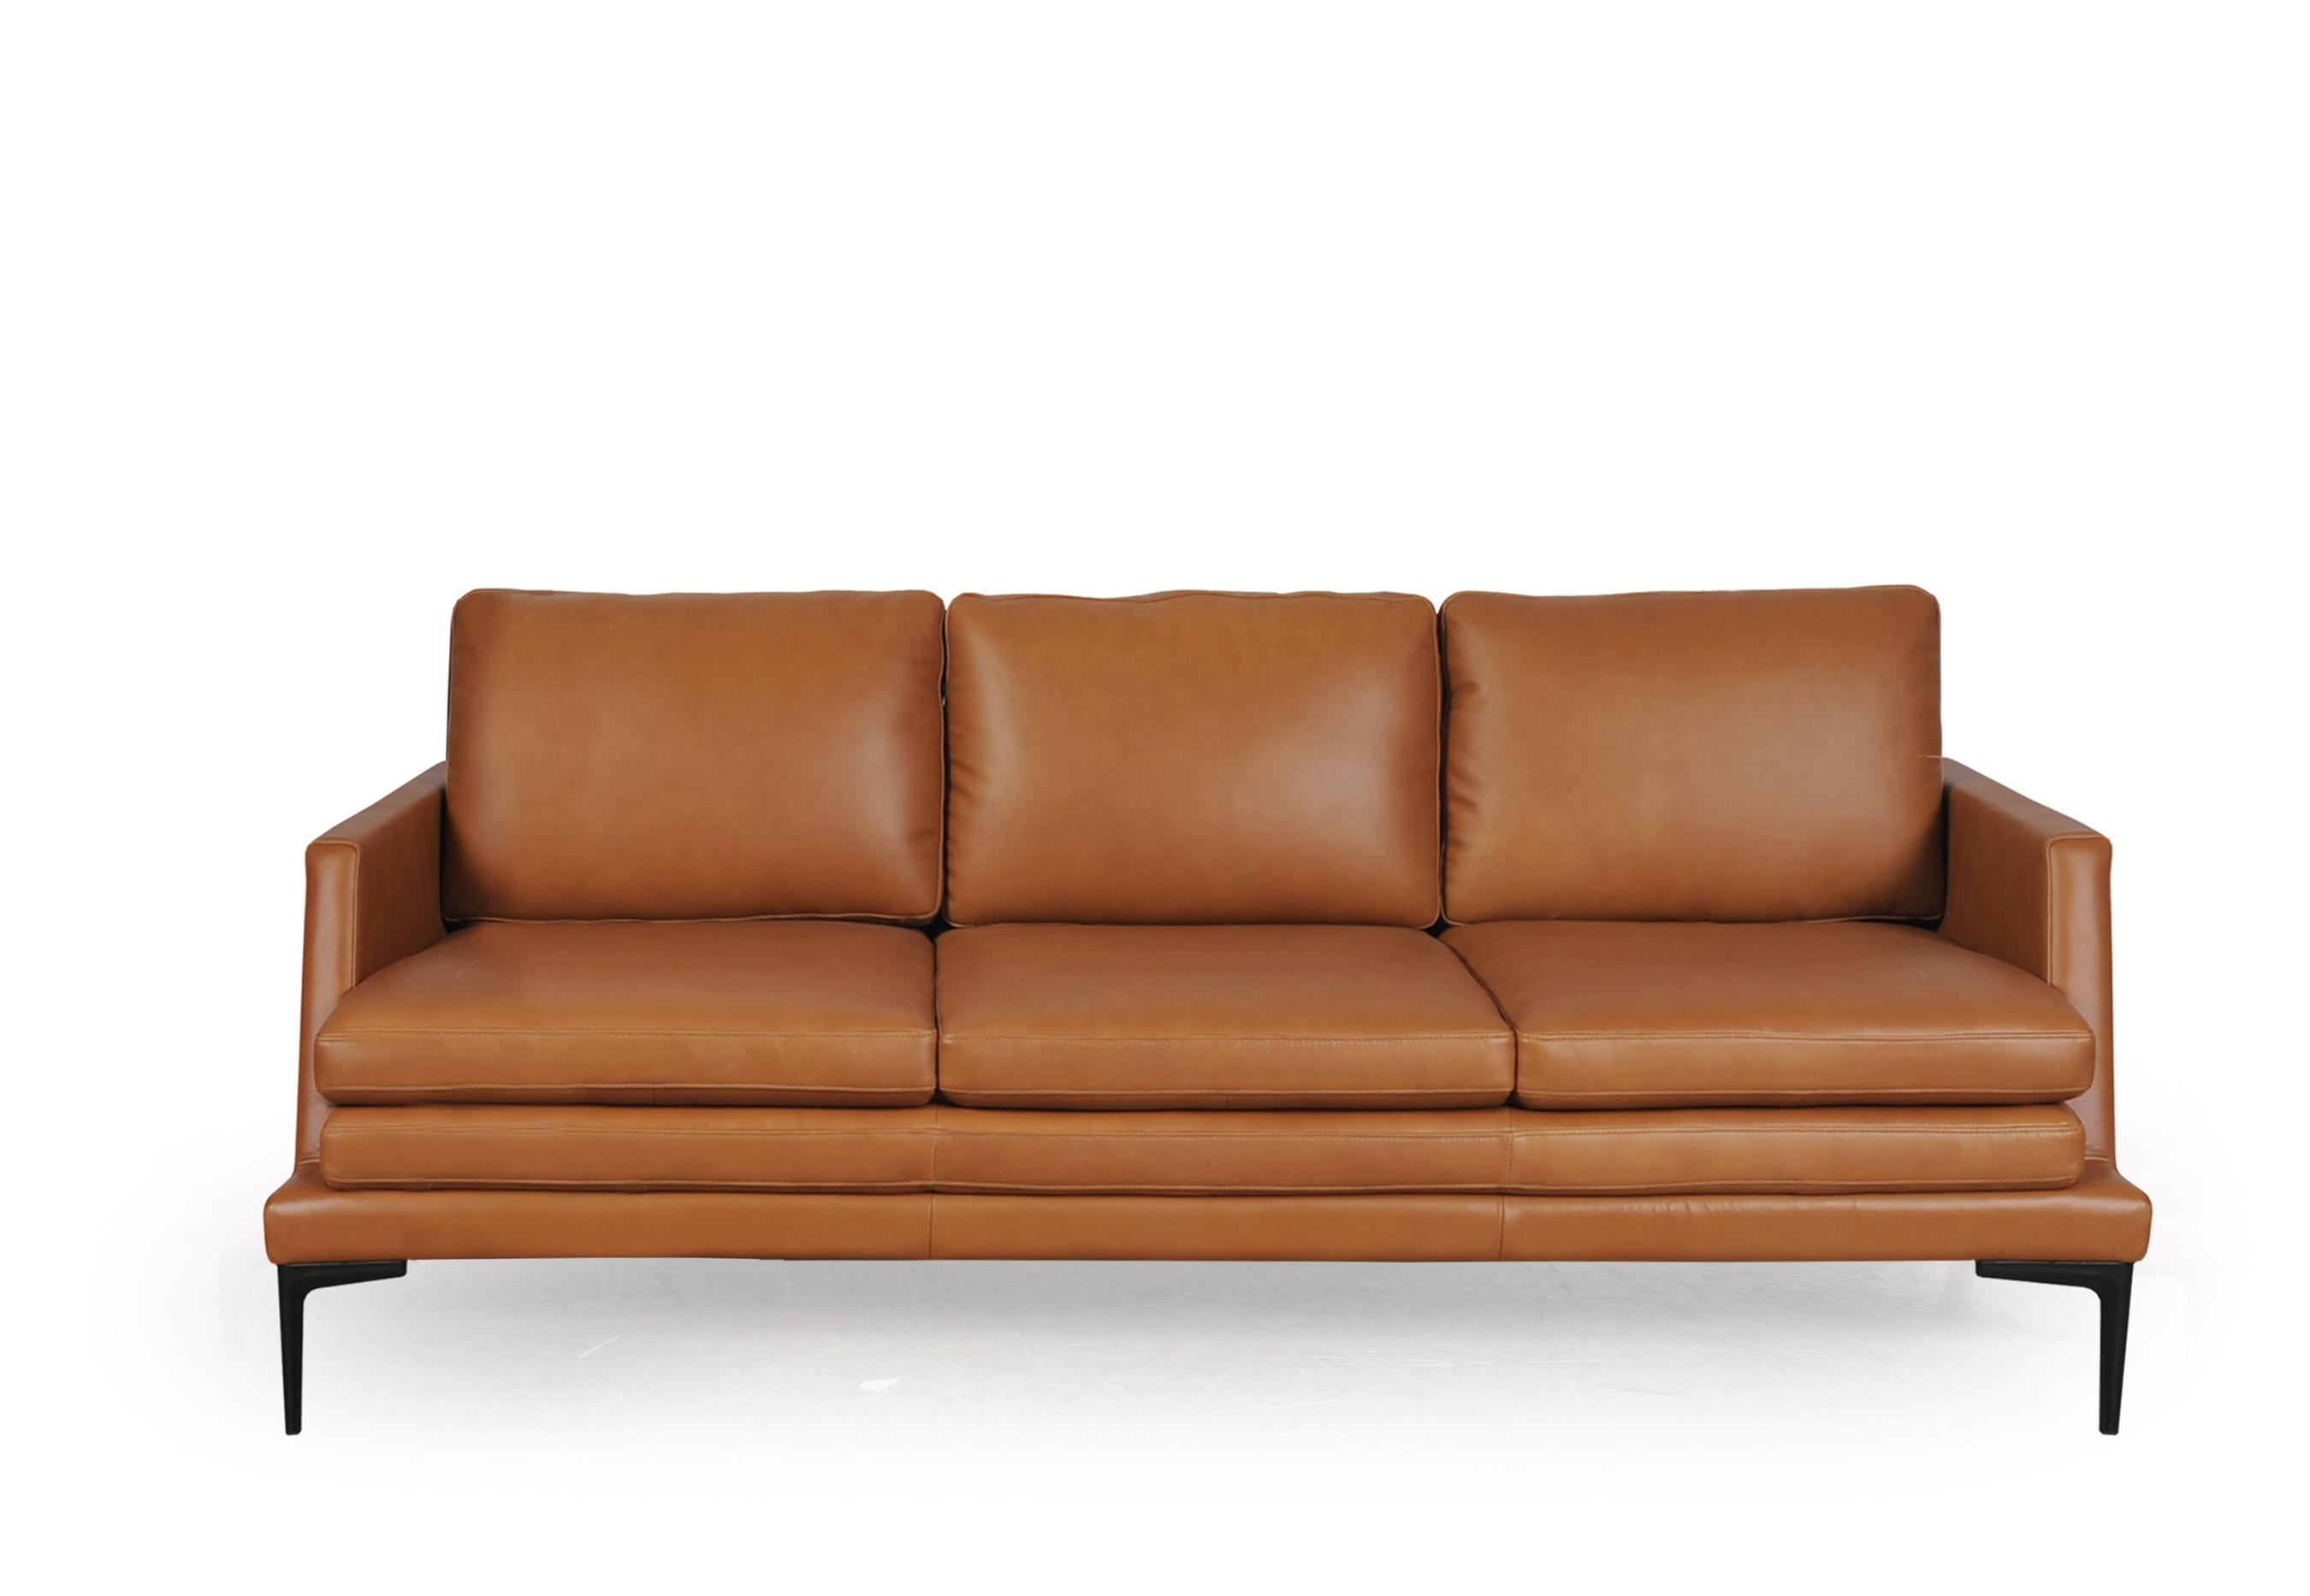 Modern Sofa 439 Rica 43903BS1961 in Tan Top grain leather